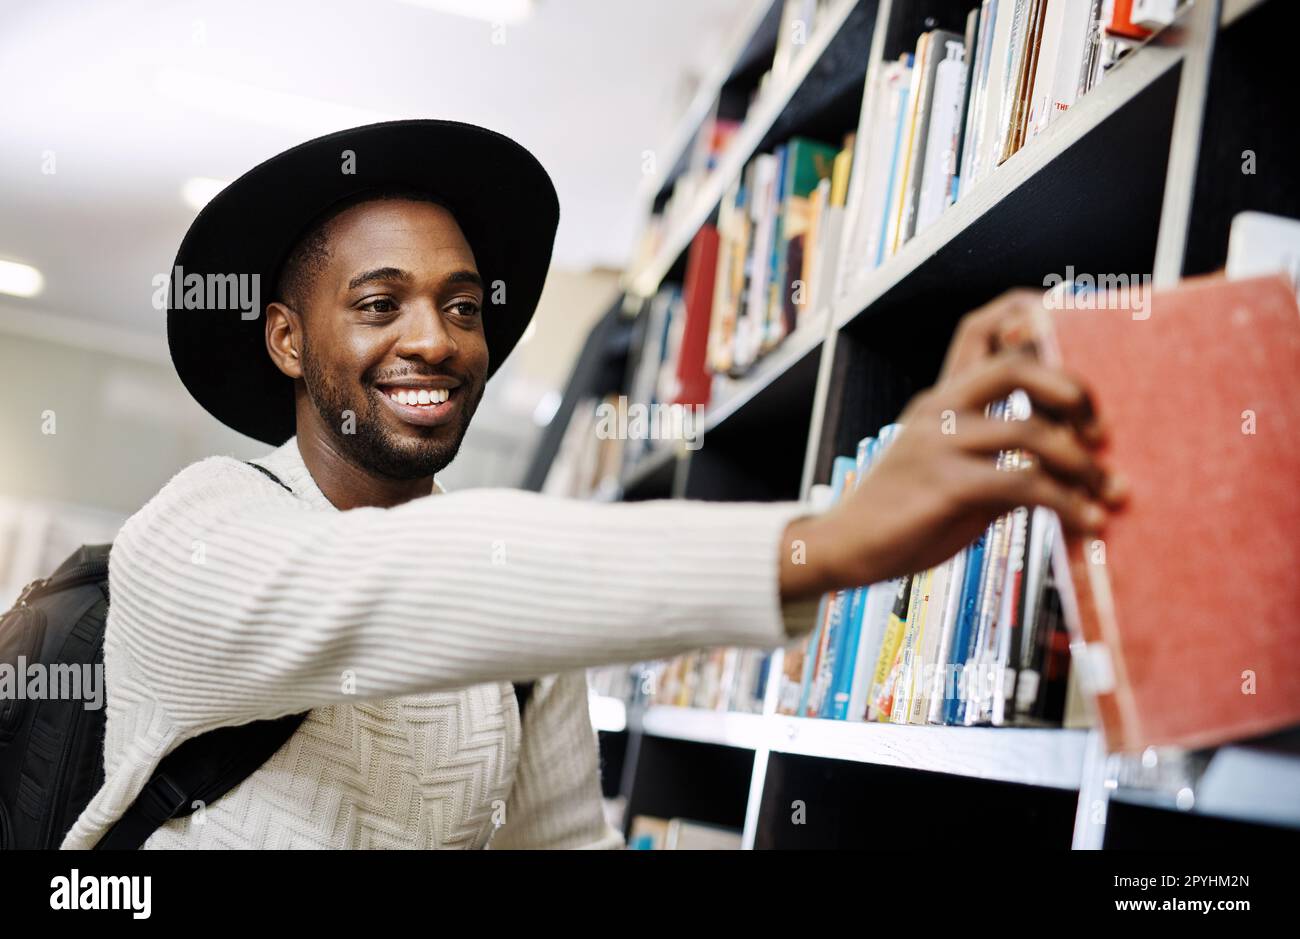 HES è sempre stato un lettore esigente. un giovane uomo felice che rimuove un libro da una mensola in una biblioteca dell'università. Foto Stock